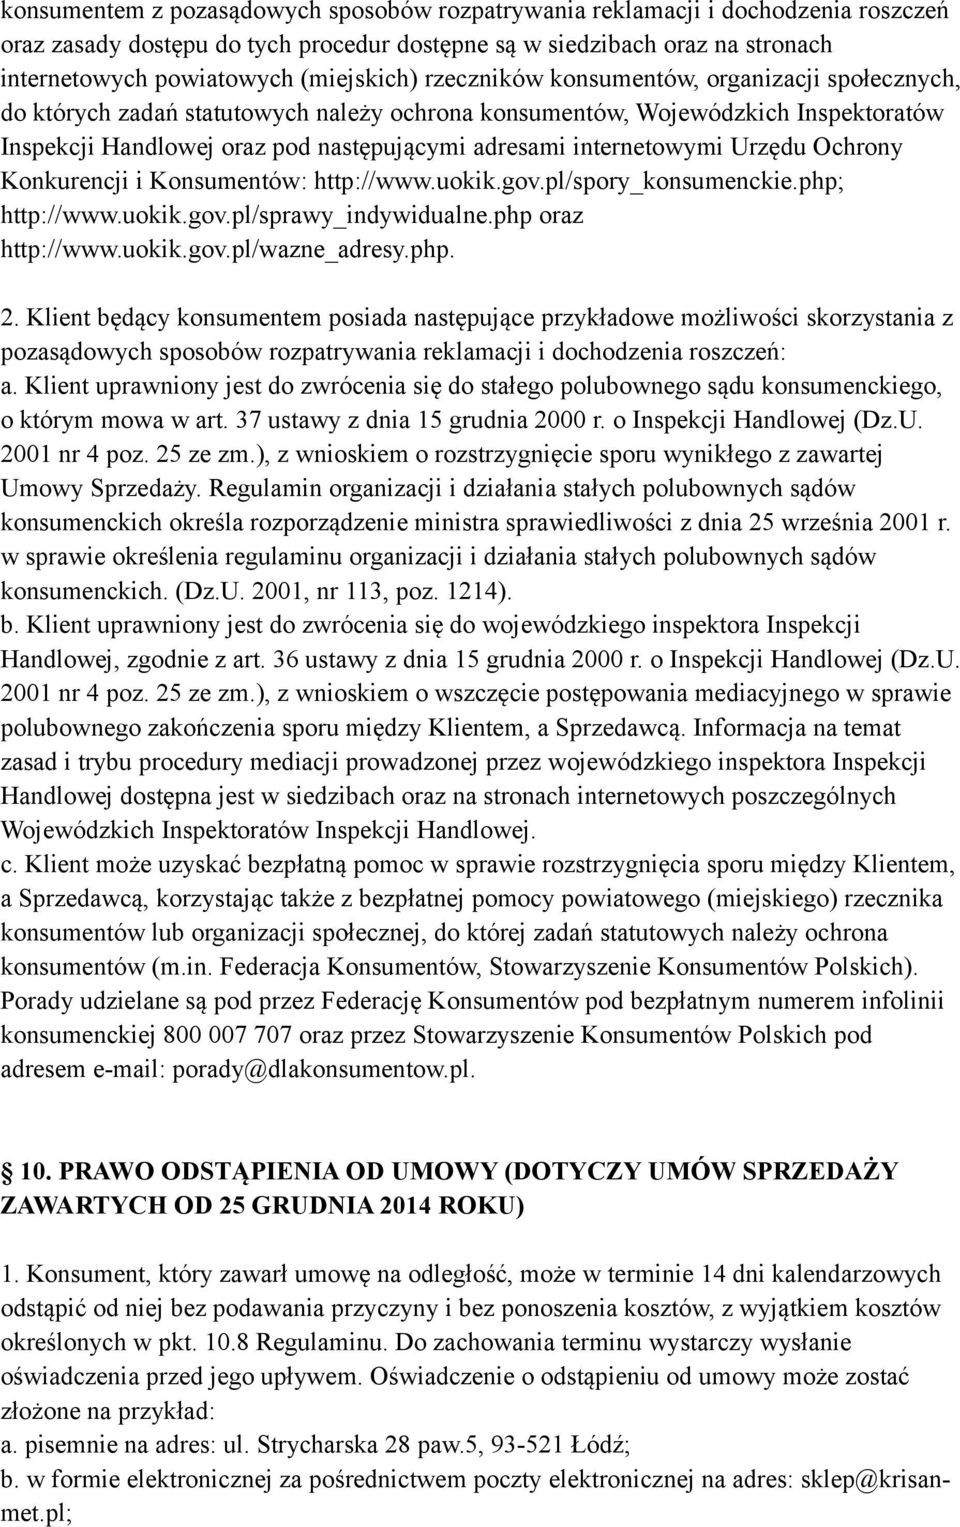 internetowymi Urzędu Ochrony Konkurencji i Konsumentów: http://www.uokik.gov.pl/spory_konsumenckie.php; http://www.uokik.gov.pl/sprawy_indywidualne.php oraz http://www.uokik.gov.pl/wazne_adresy.php. 2.